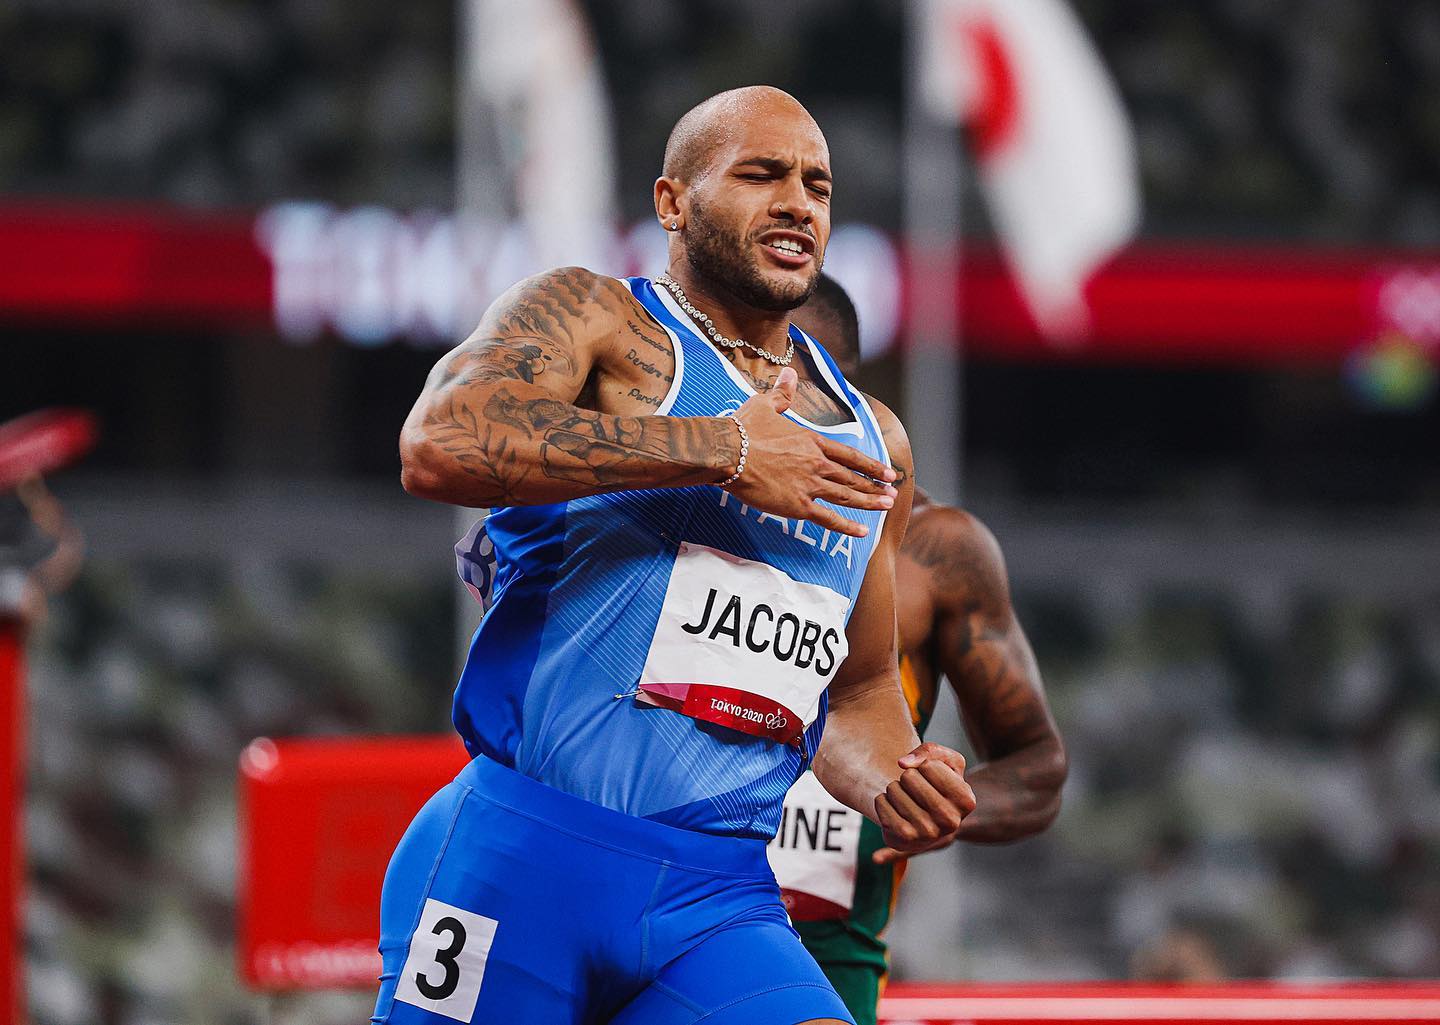 Atletica, Jacobs fuori dalla finale dei 100 metri a Budapest:”Dai tempi duri arrivano gli uomini forti”